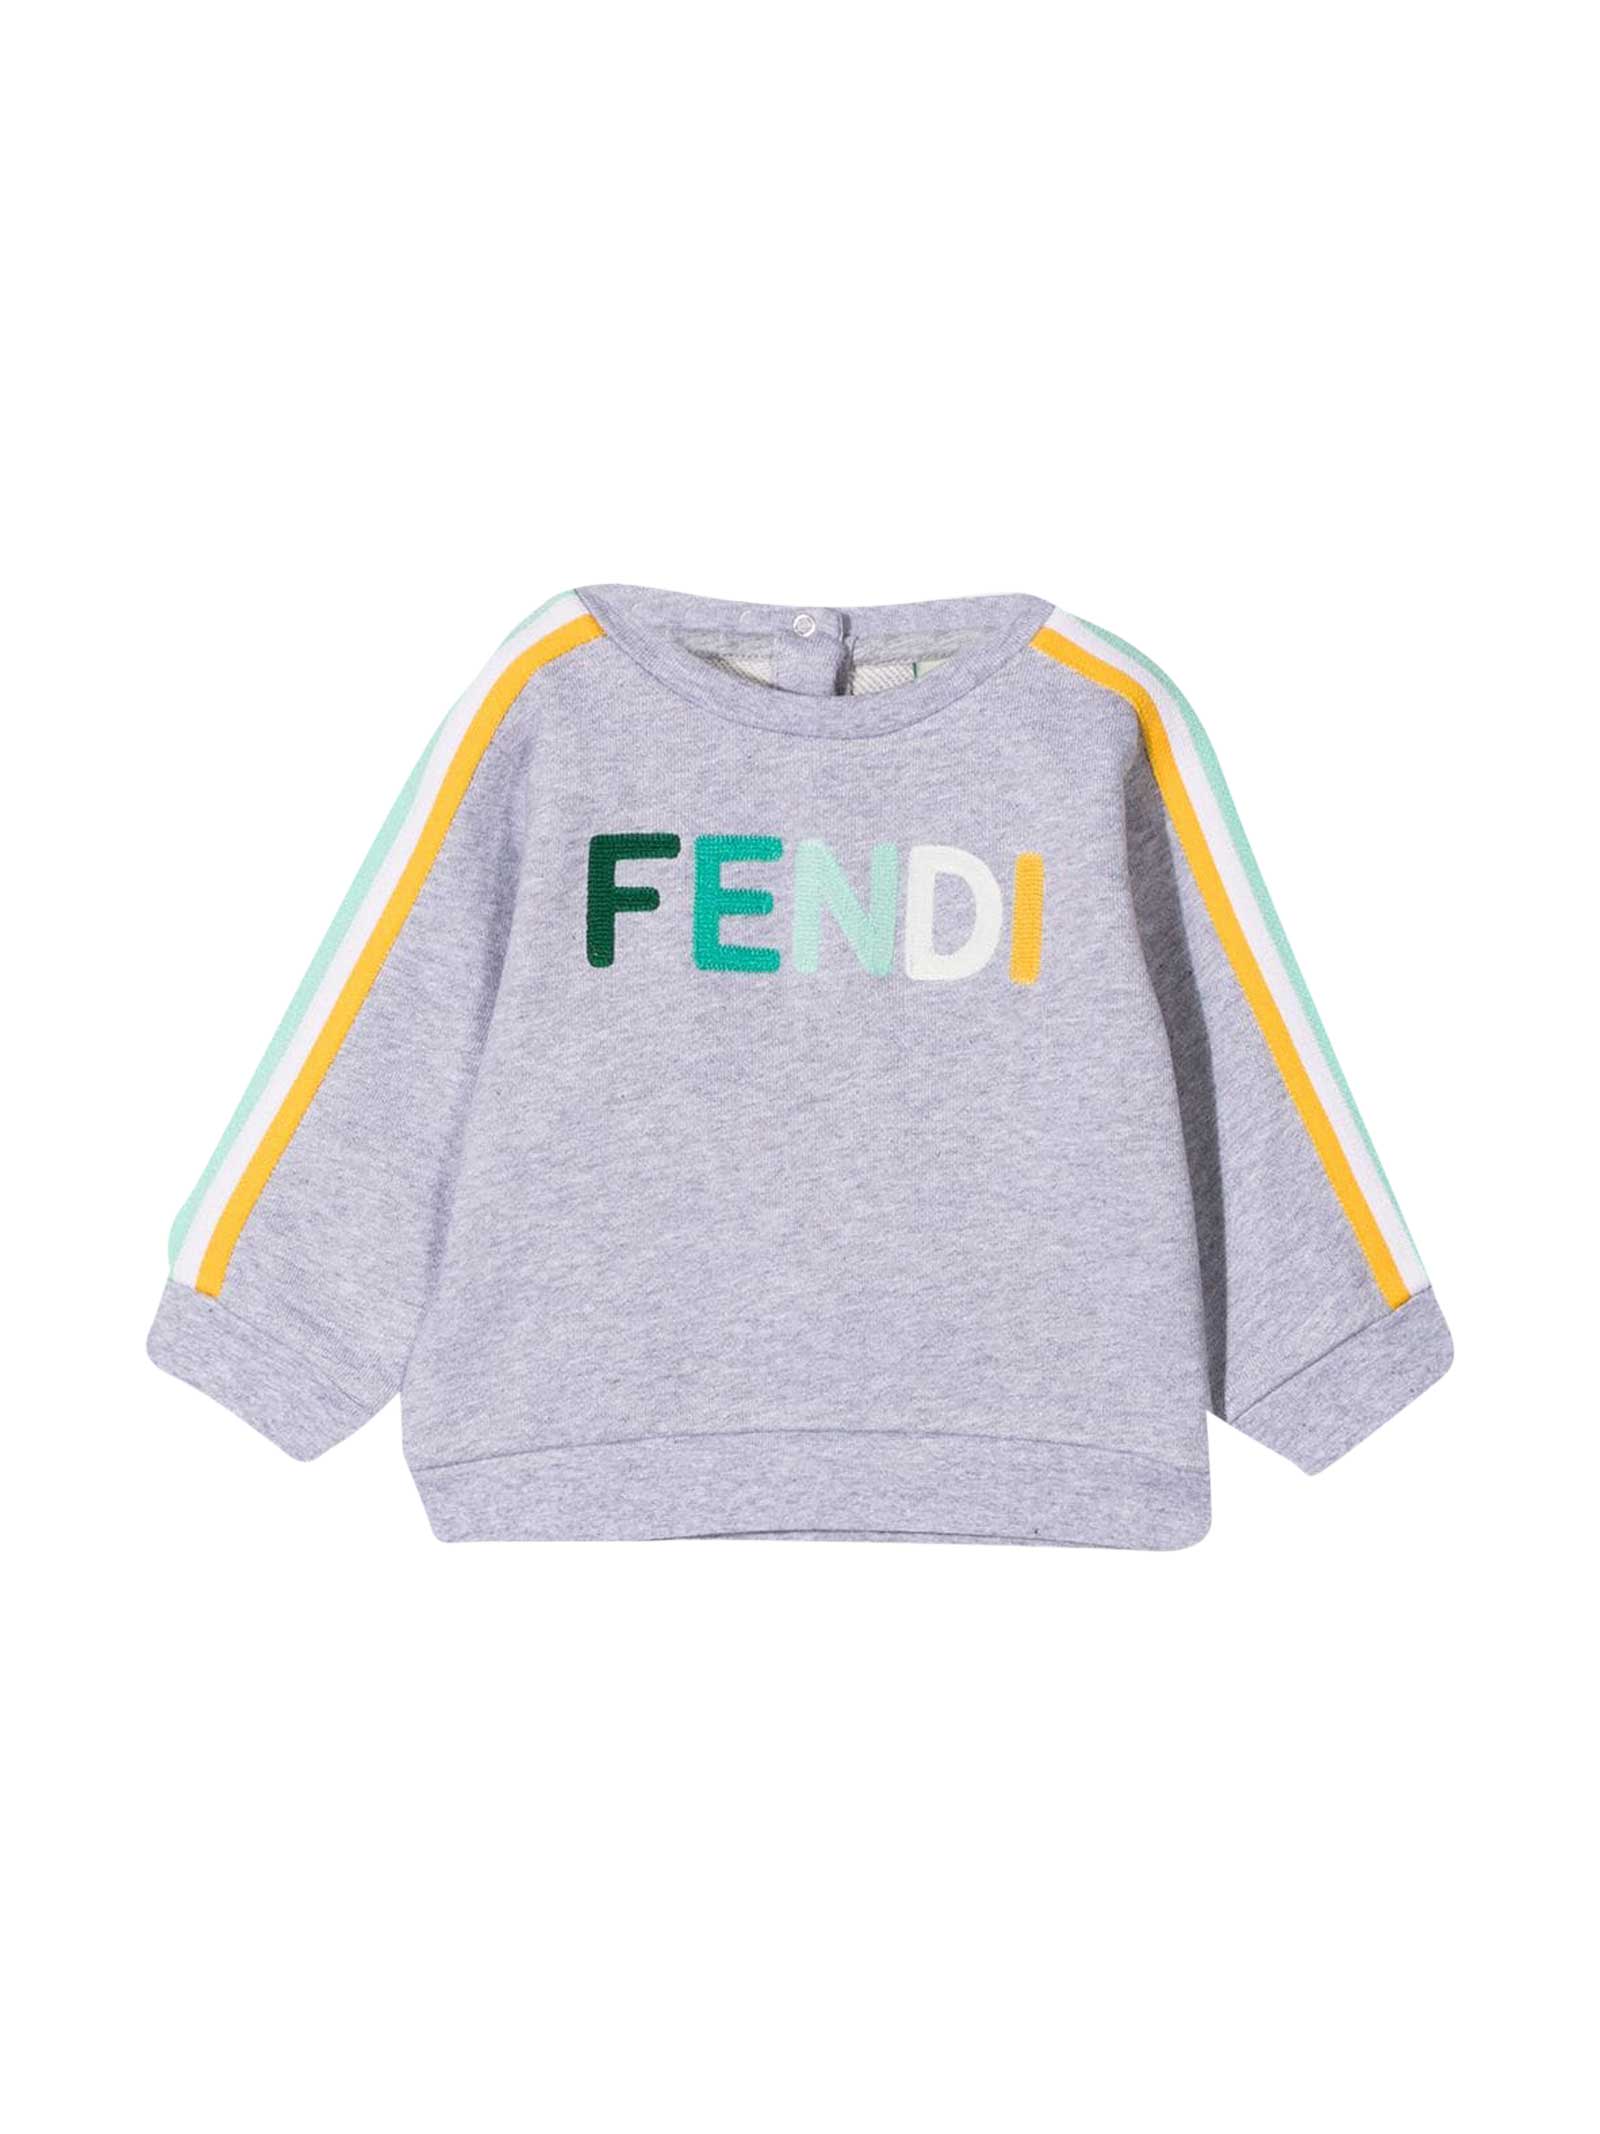 Fendi Gray Sweatshirt